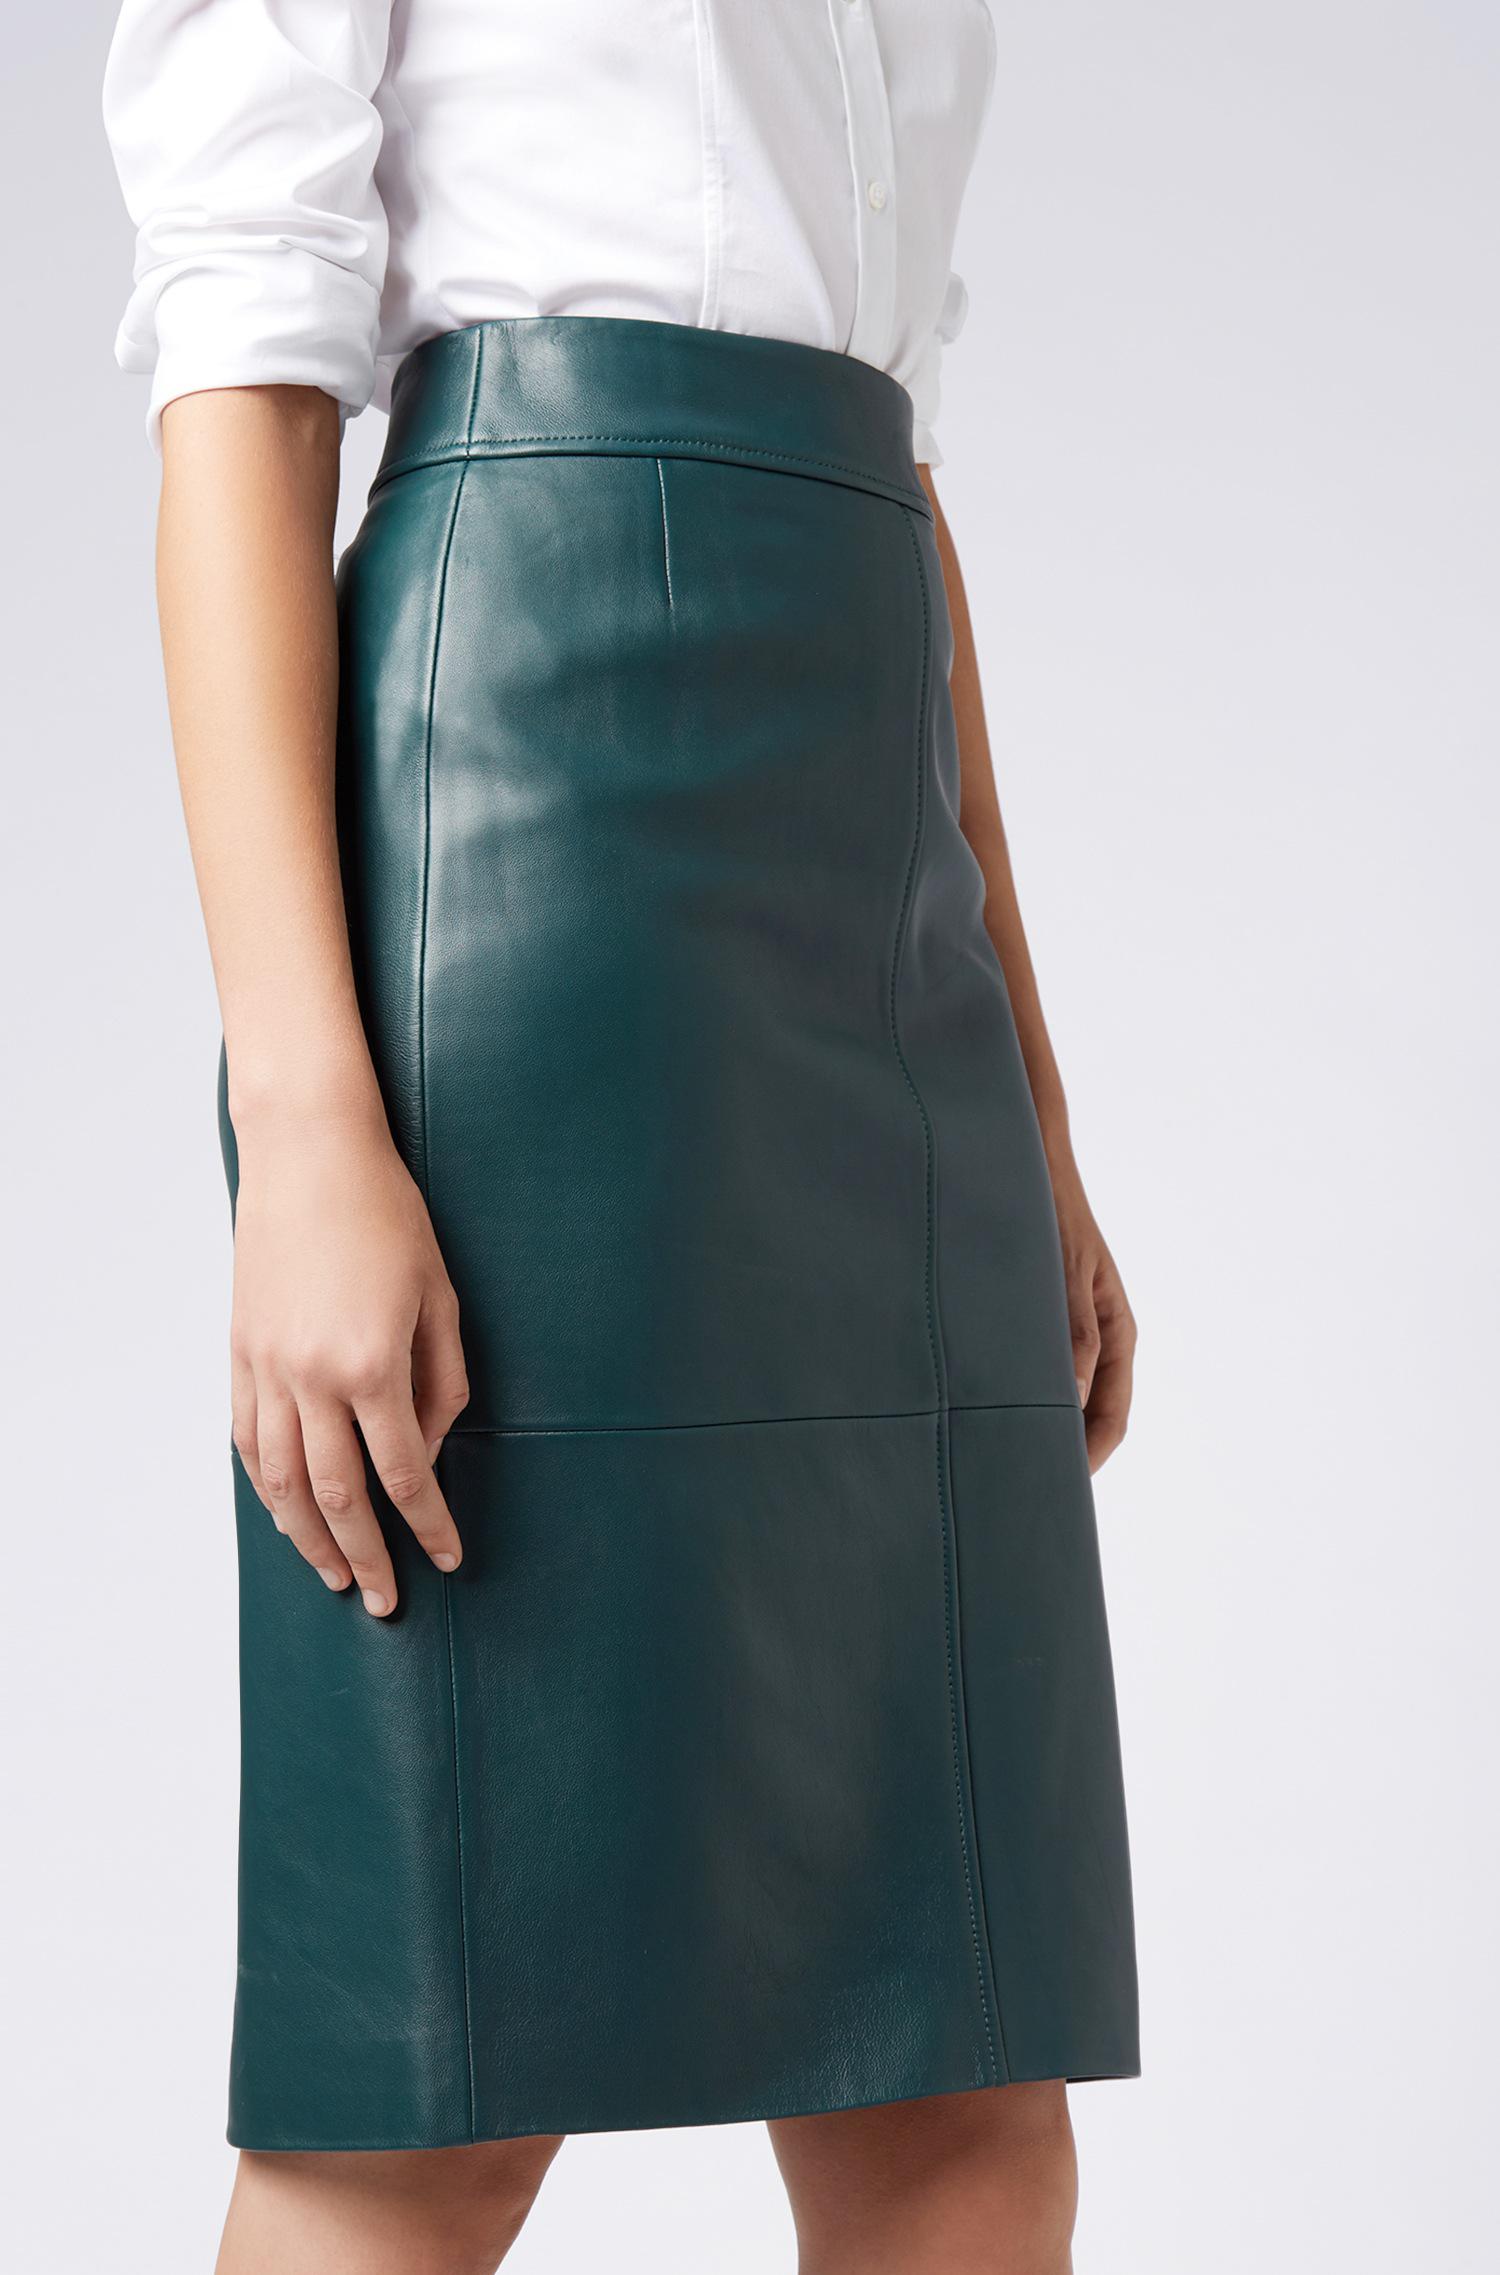 Hugo Boss Leather Skirt Czech Republic, SAVE 60% - aveclumiere.com